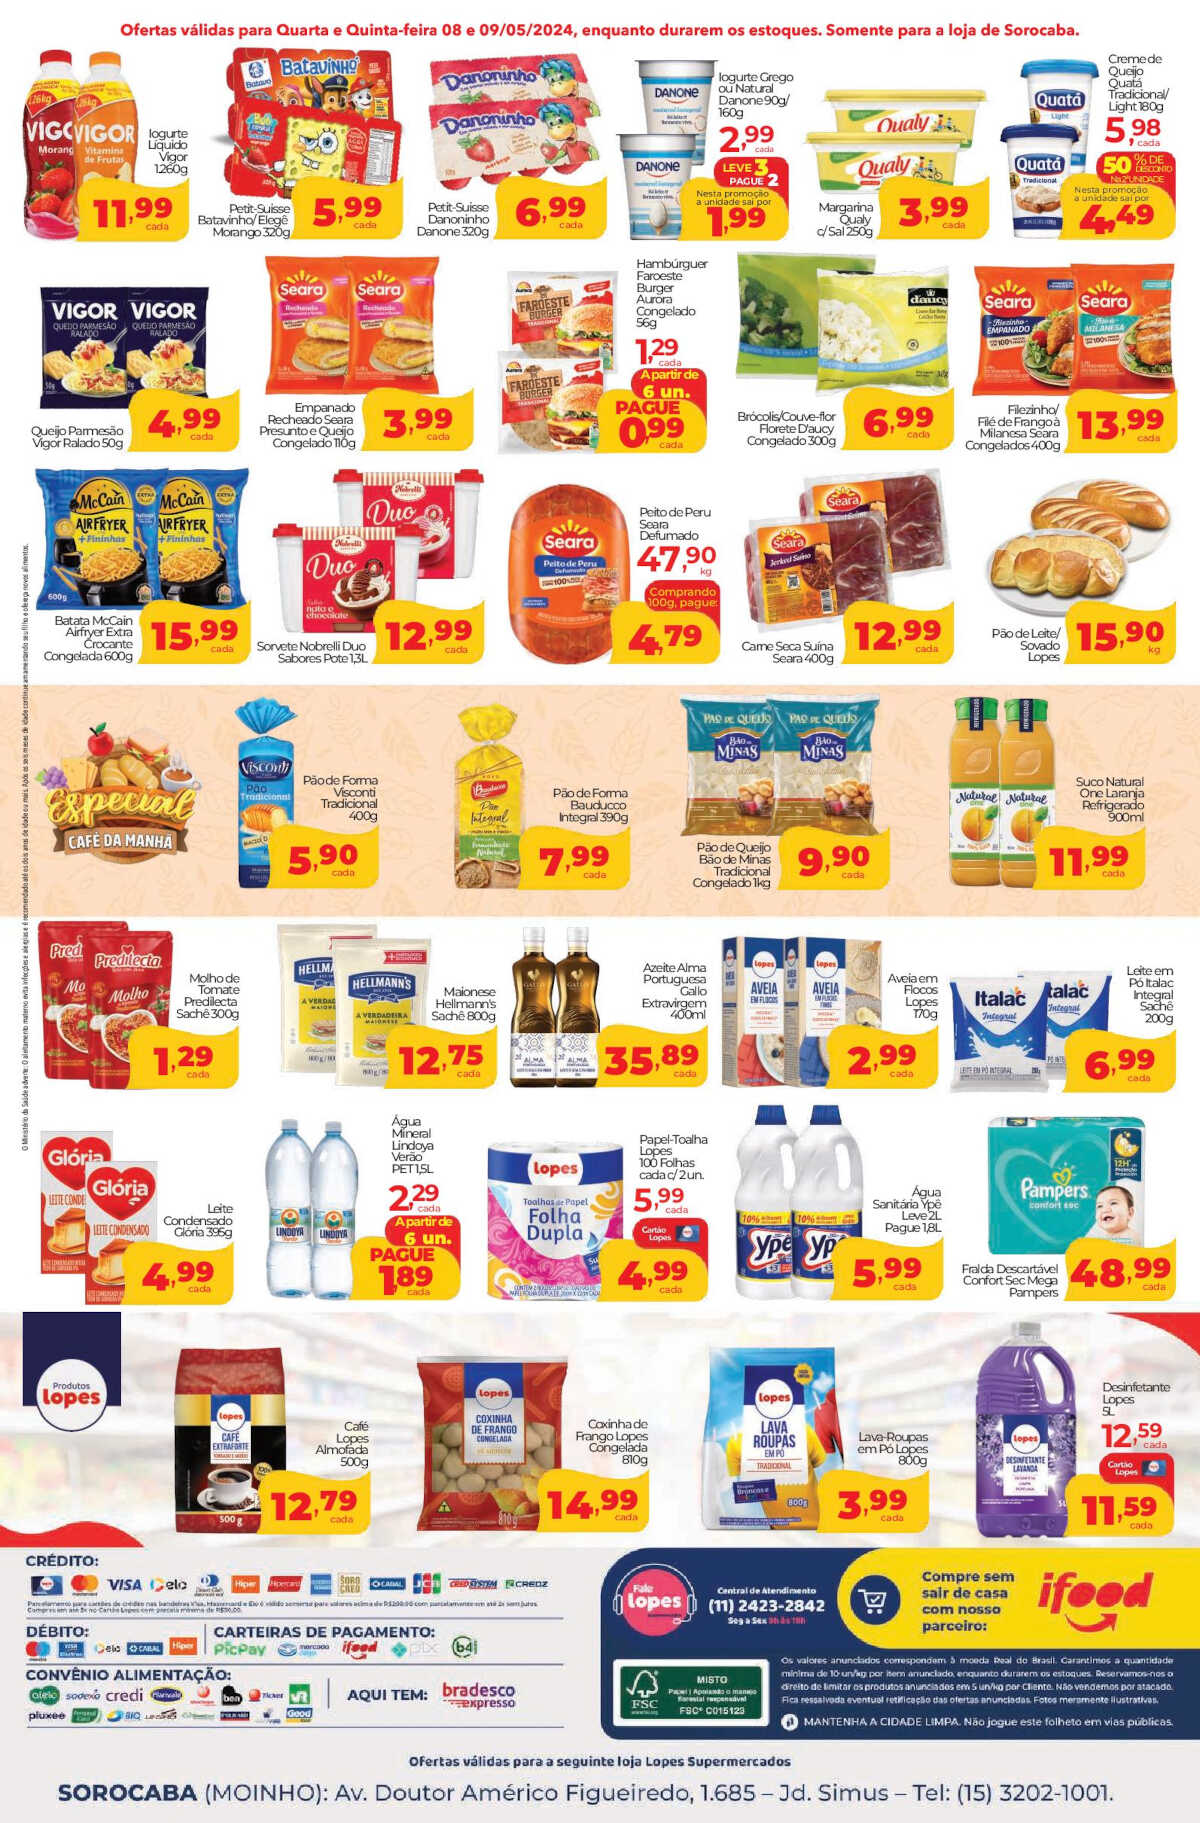 Ofertas Lopes Supermercados até 09/05